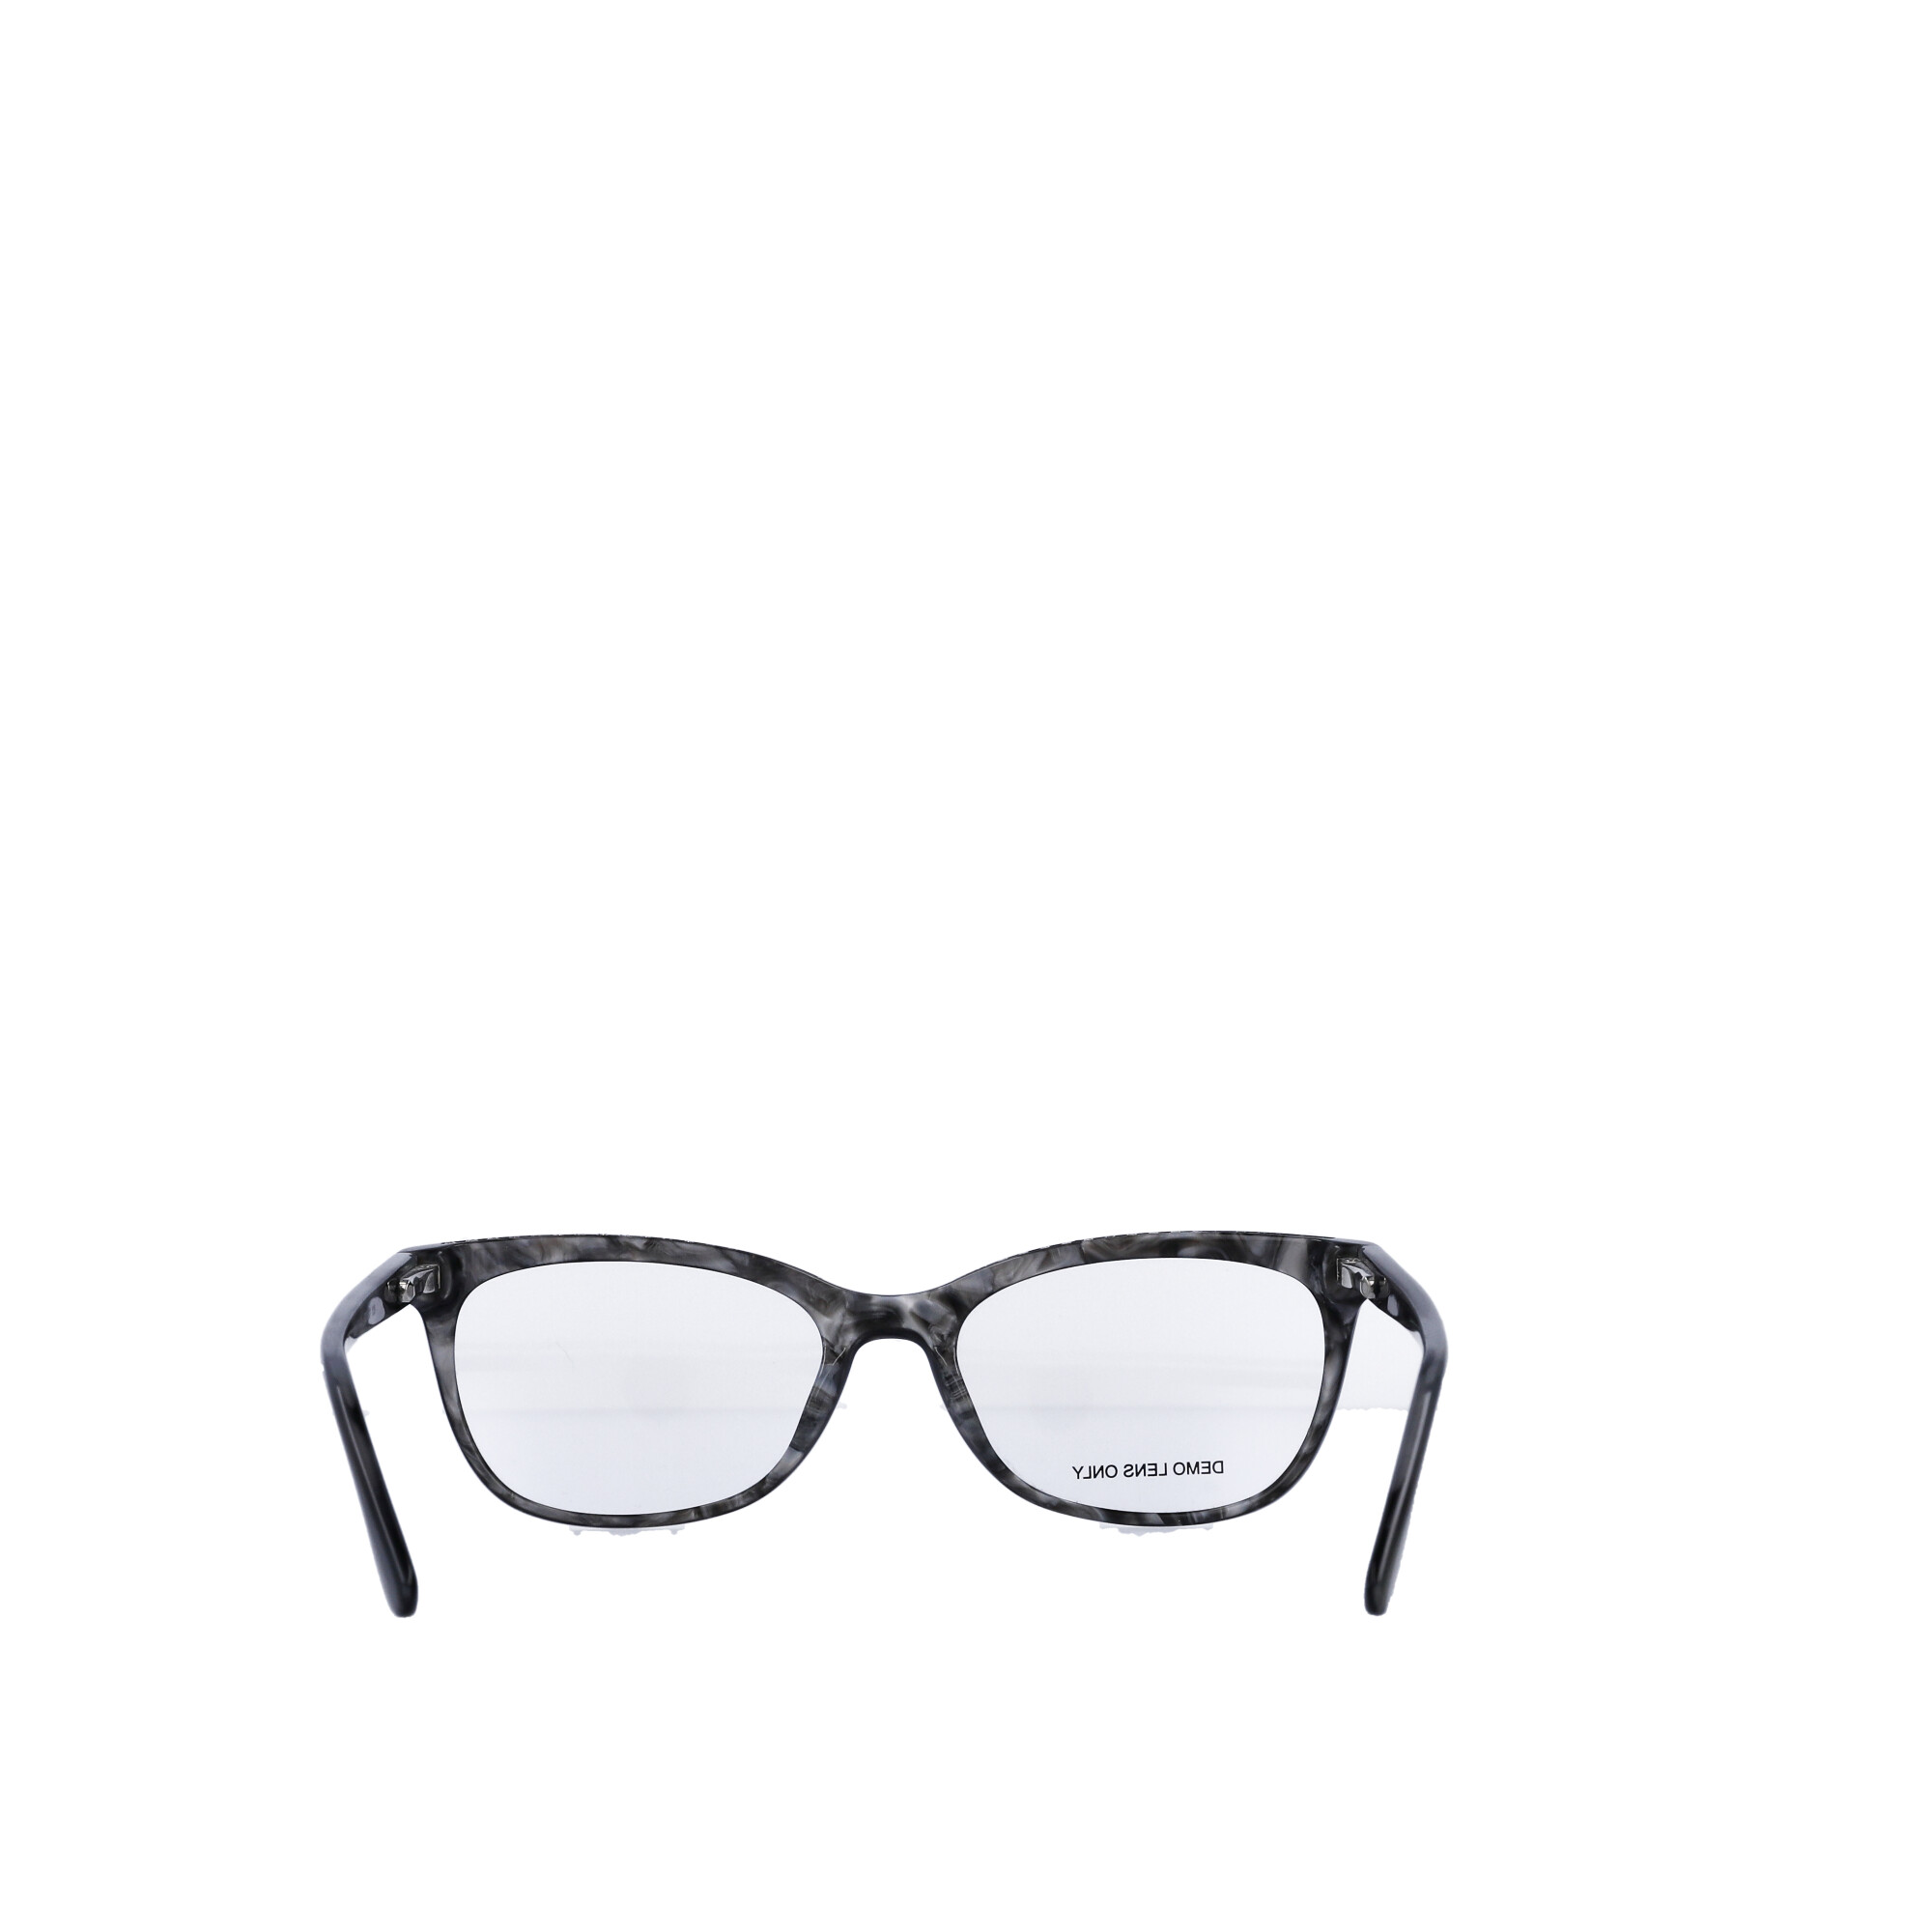 Designer Frames for Less Women's Rx'able Eyeglasses, Black - image 5 of 13